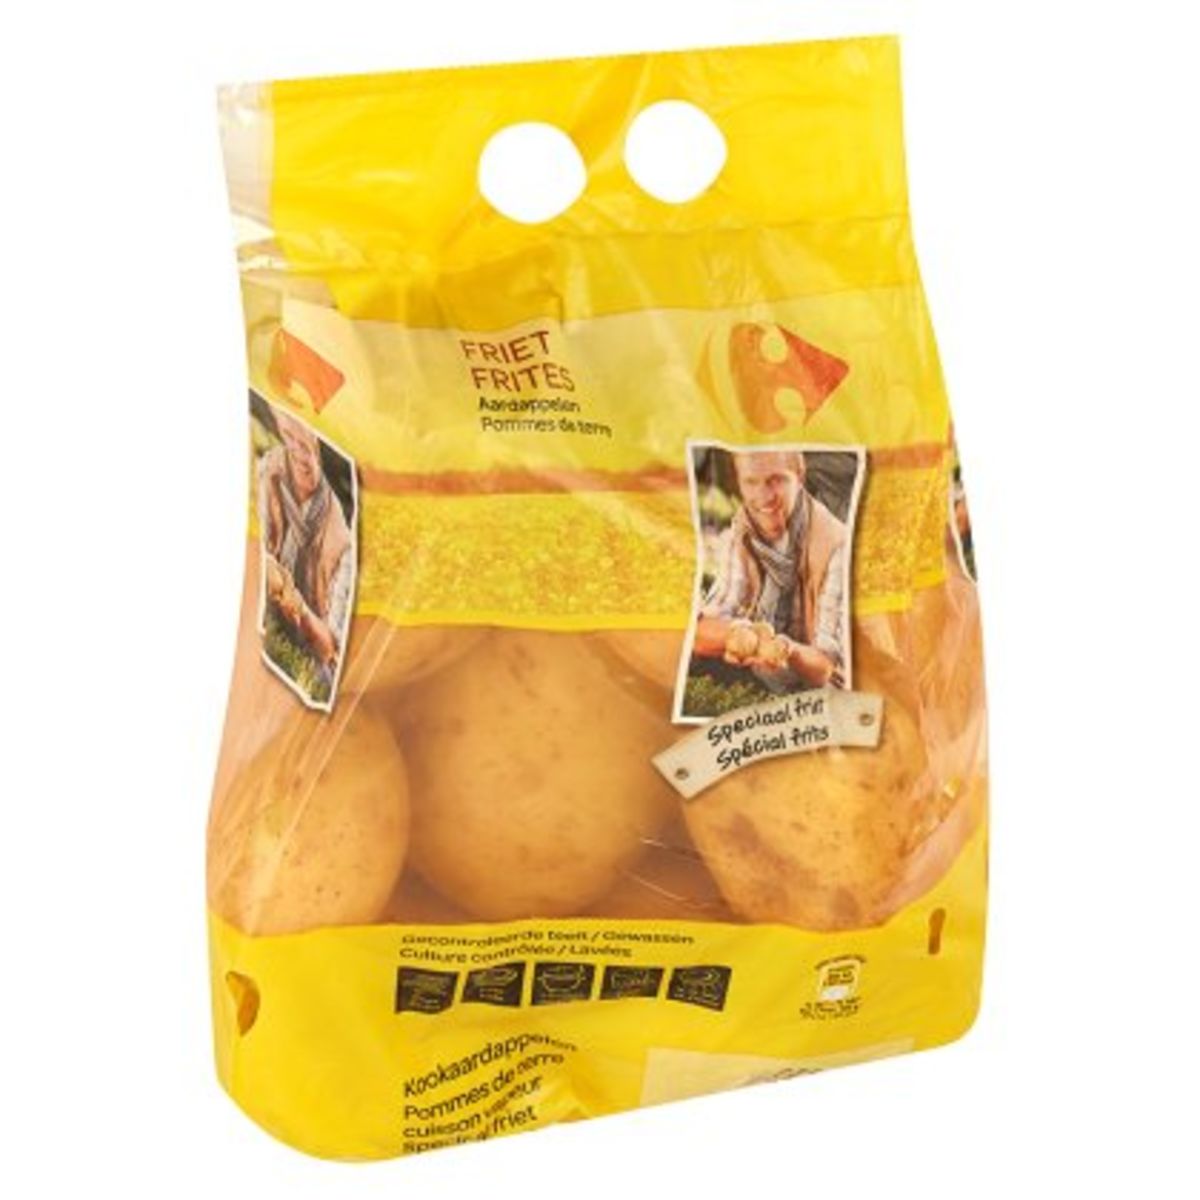 Carrefour Pommes de Terre Frite 2.5 kg